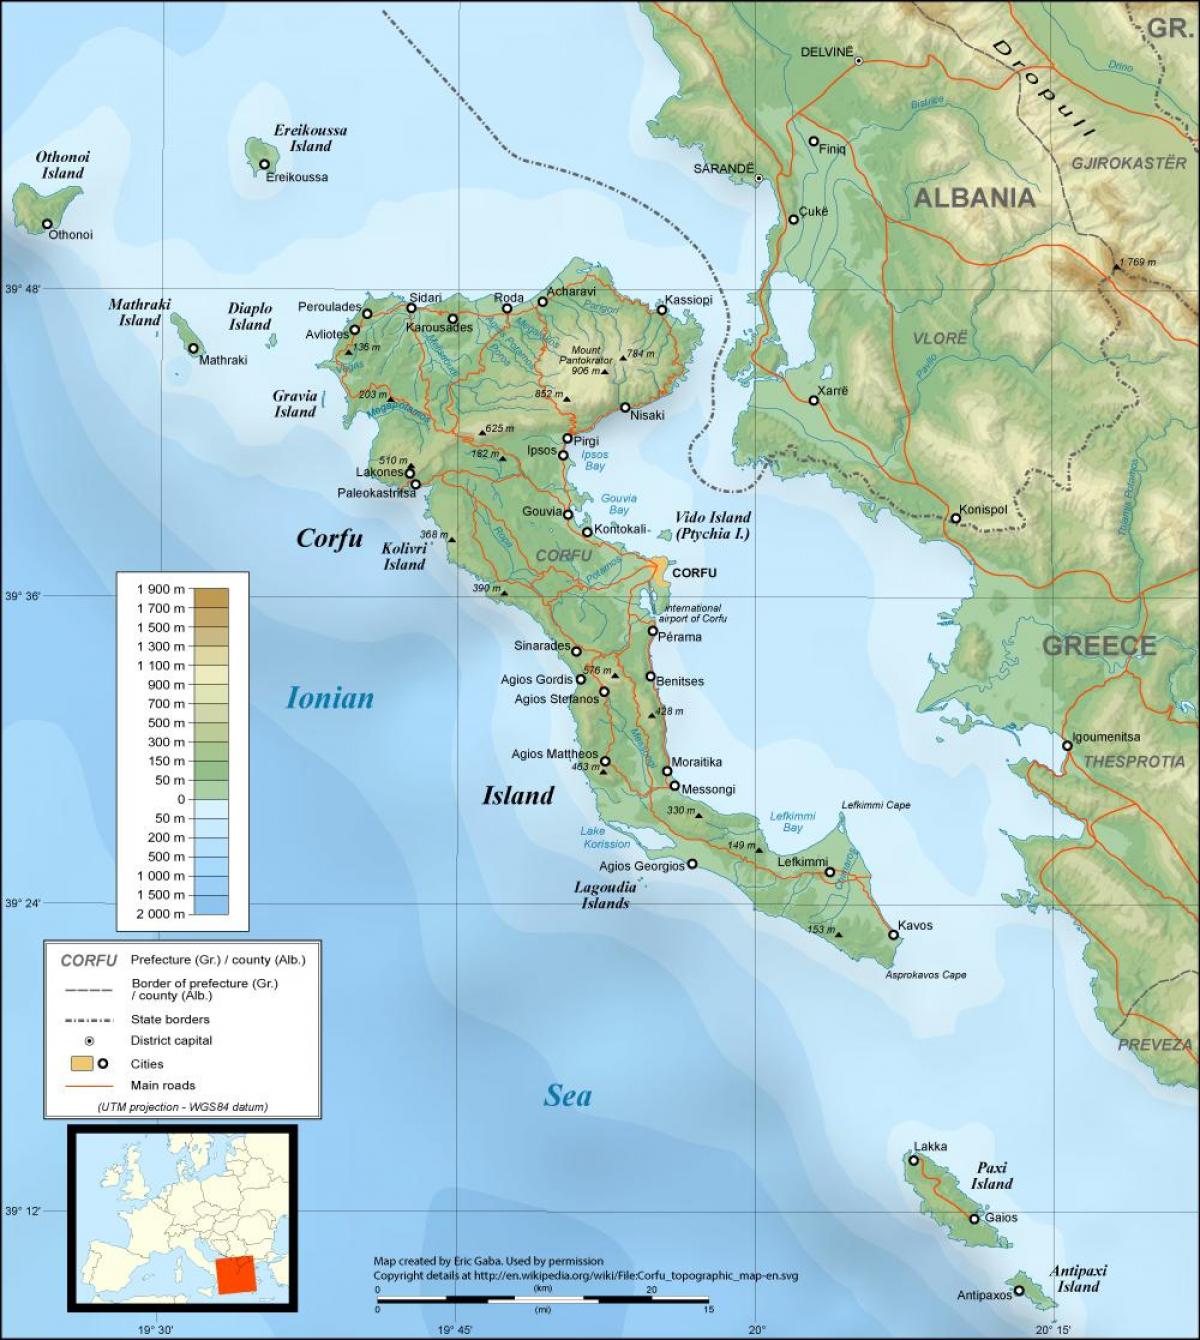 krf karta Krf karta Grčke kartica Krf u Grčkoj (Južna Europa   Europa) krf karta